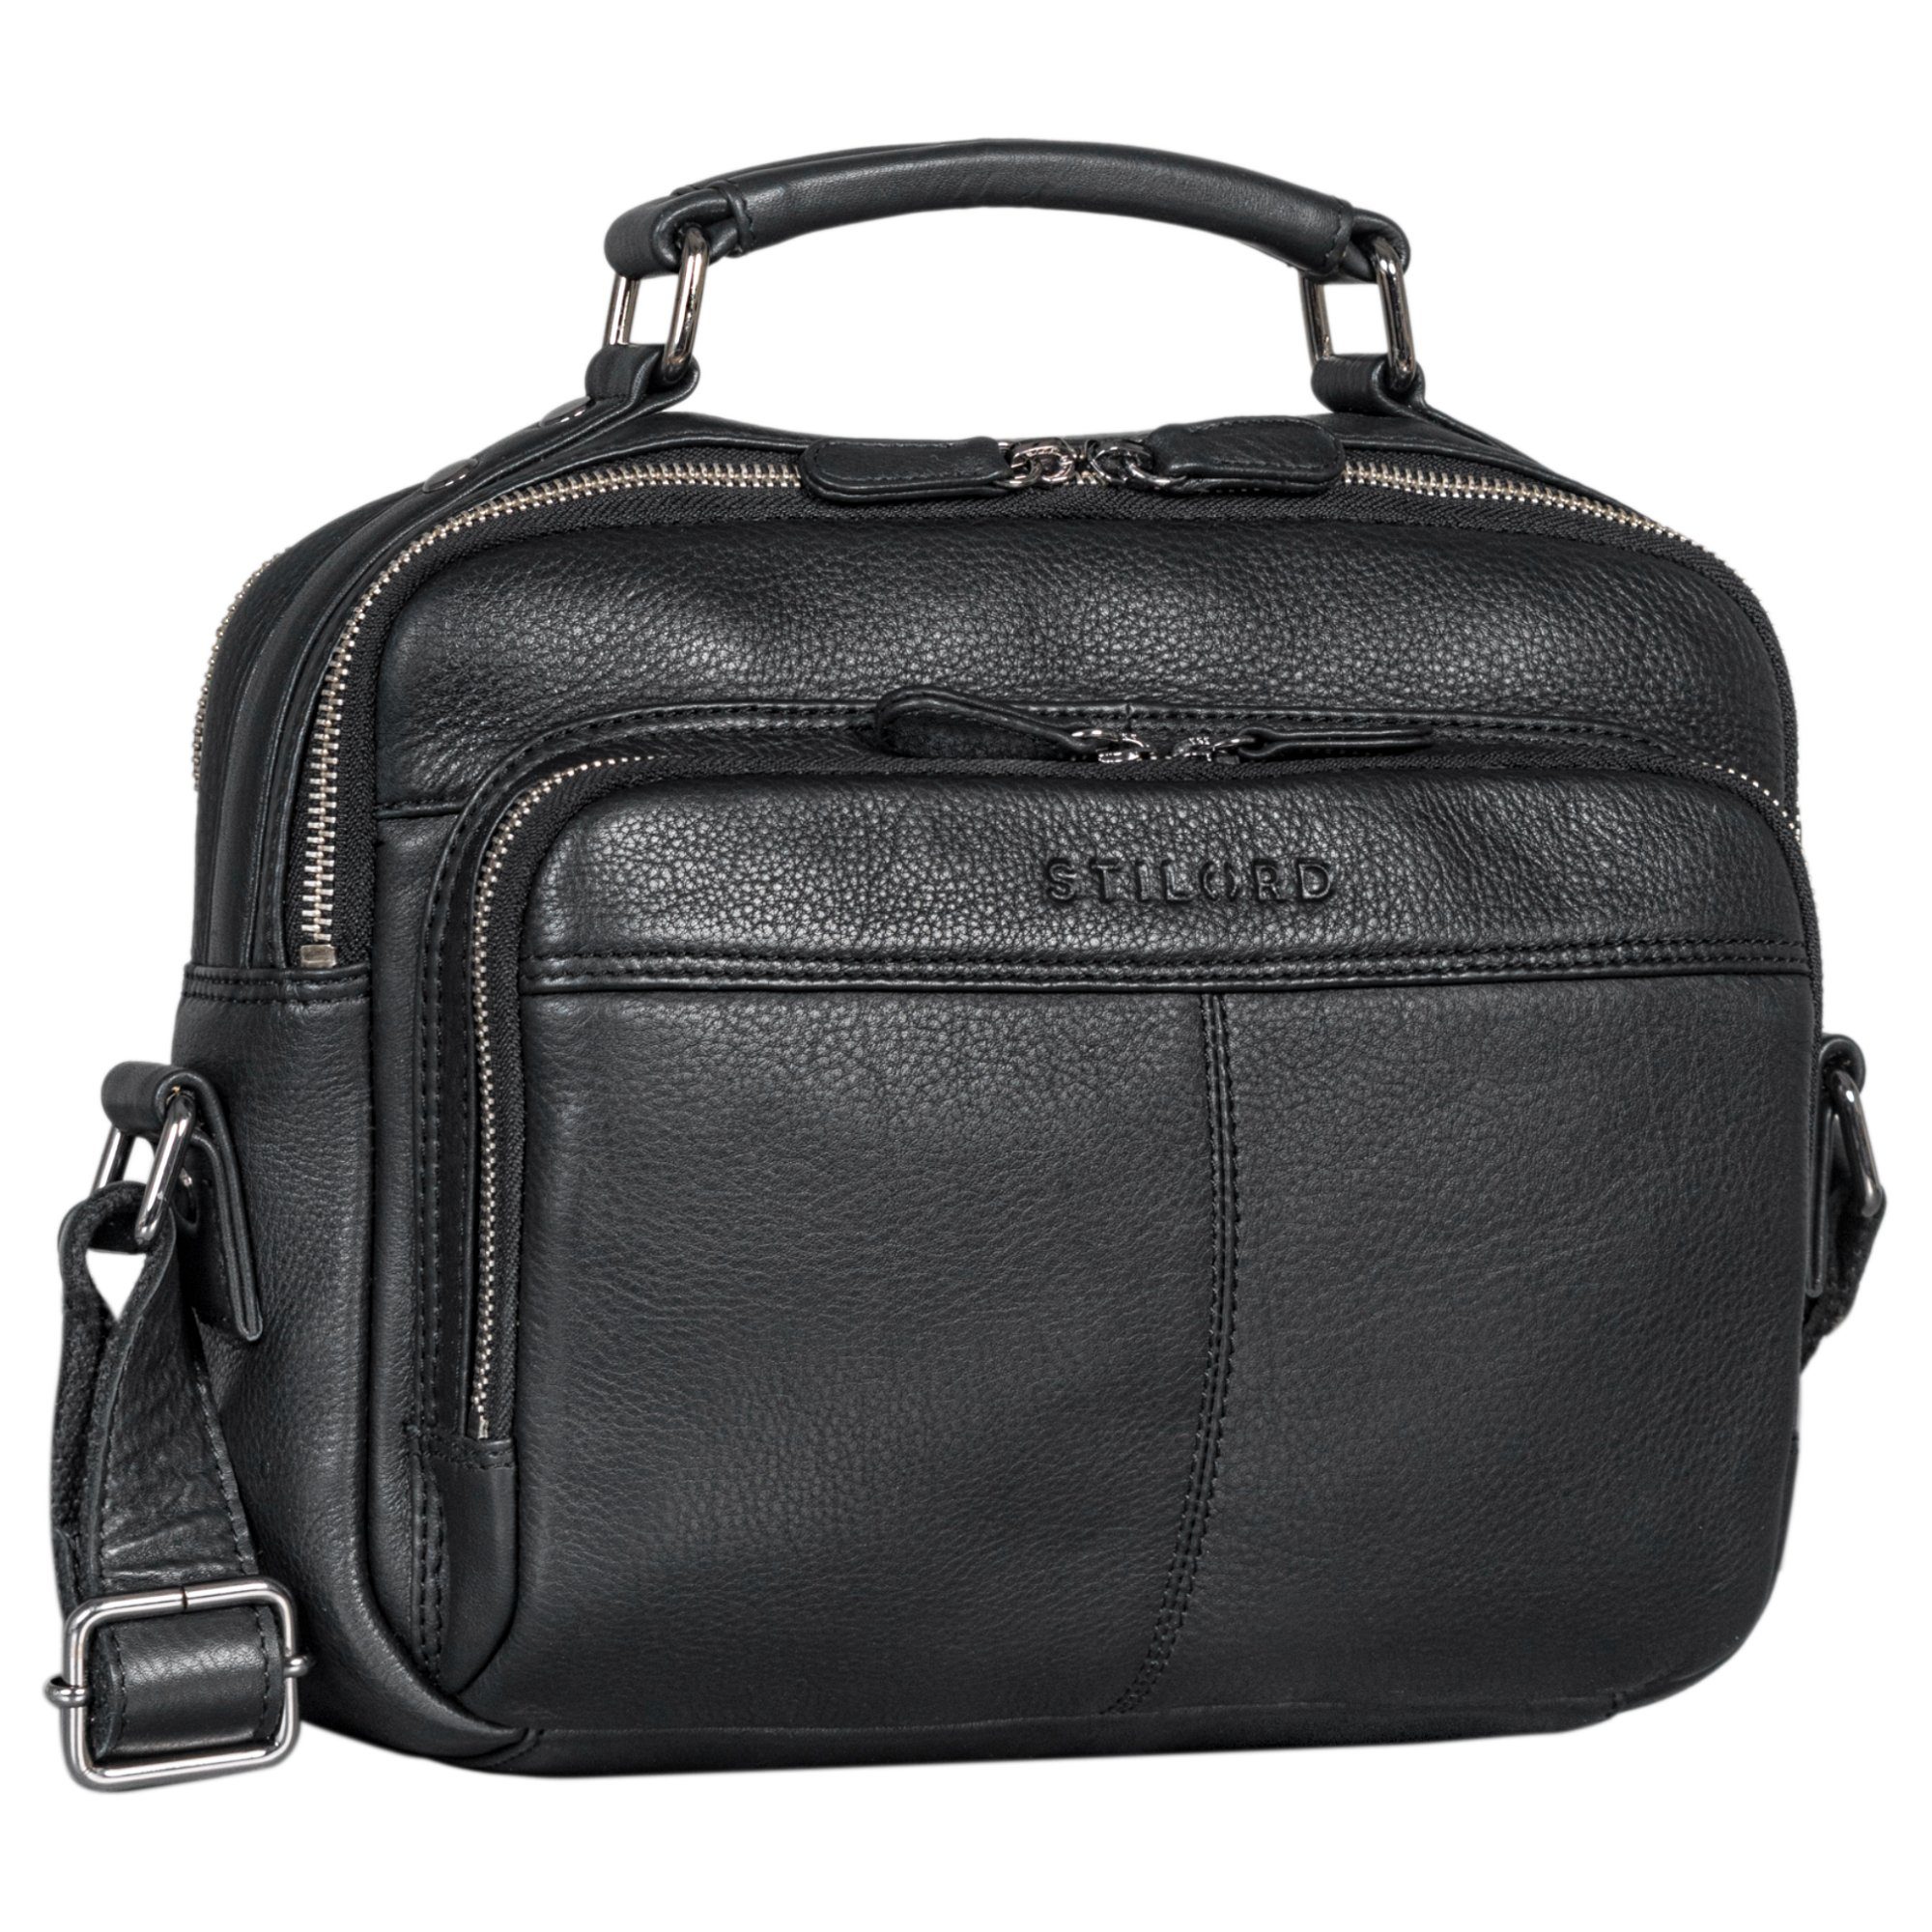 STILORD Messenger Bag "Kuno" Stilvolle Umhängetasche Herren Leder klein schwarz | Messenger Bags